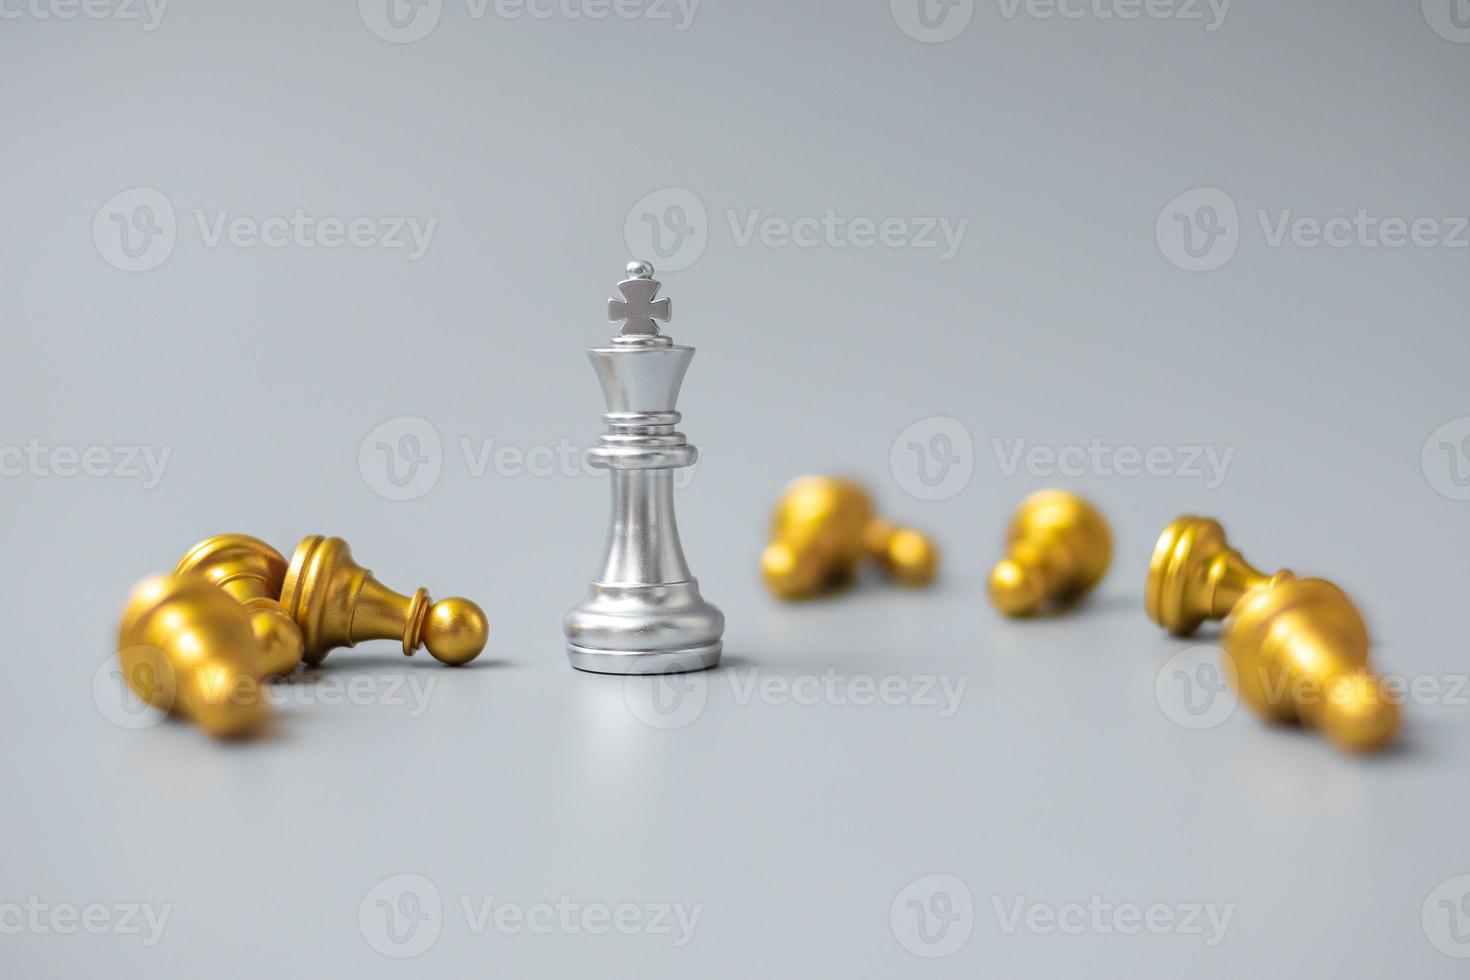 La figura plateada del rey del ajedrez se destaca entre la multitud de enemigos u oponentes. estrategia, éxito, gestión, planificación empresarial, disrupción, concepto de victoria y liderazgo foto